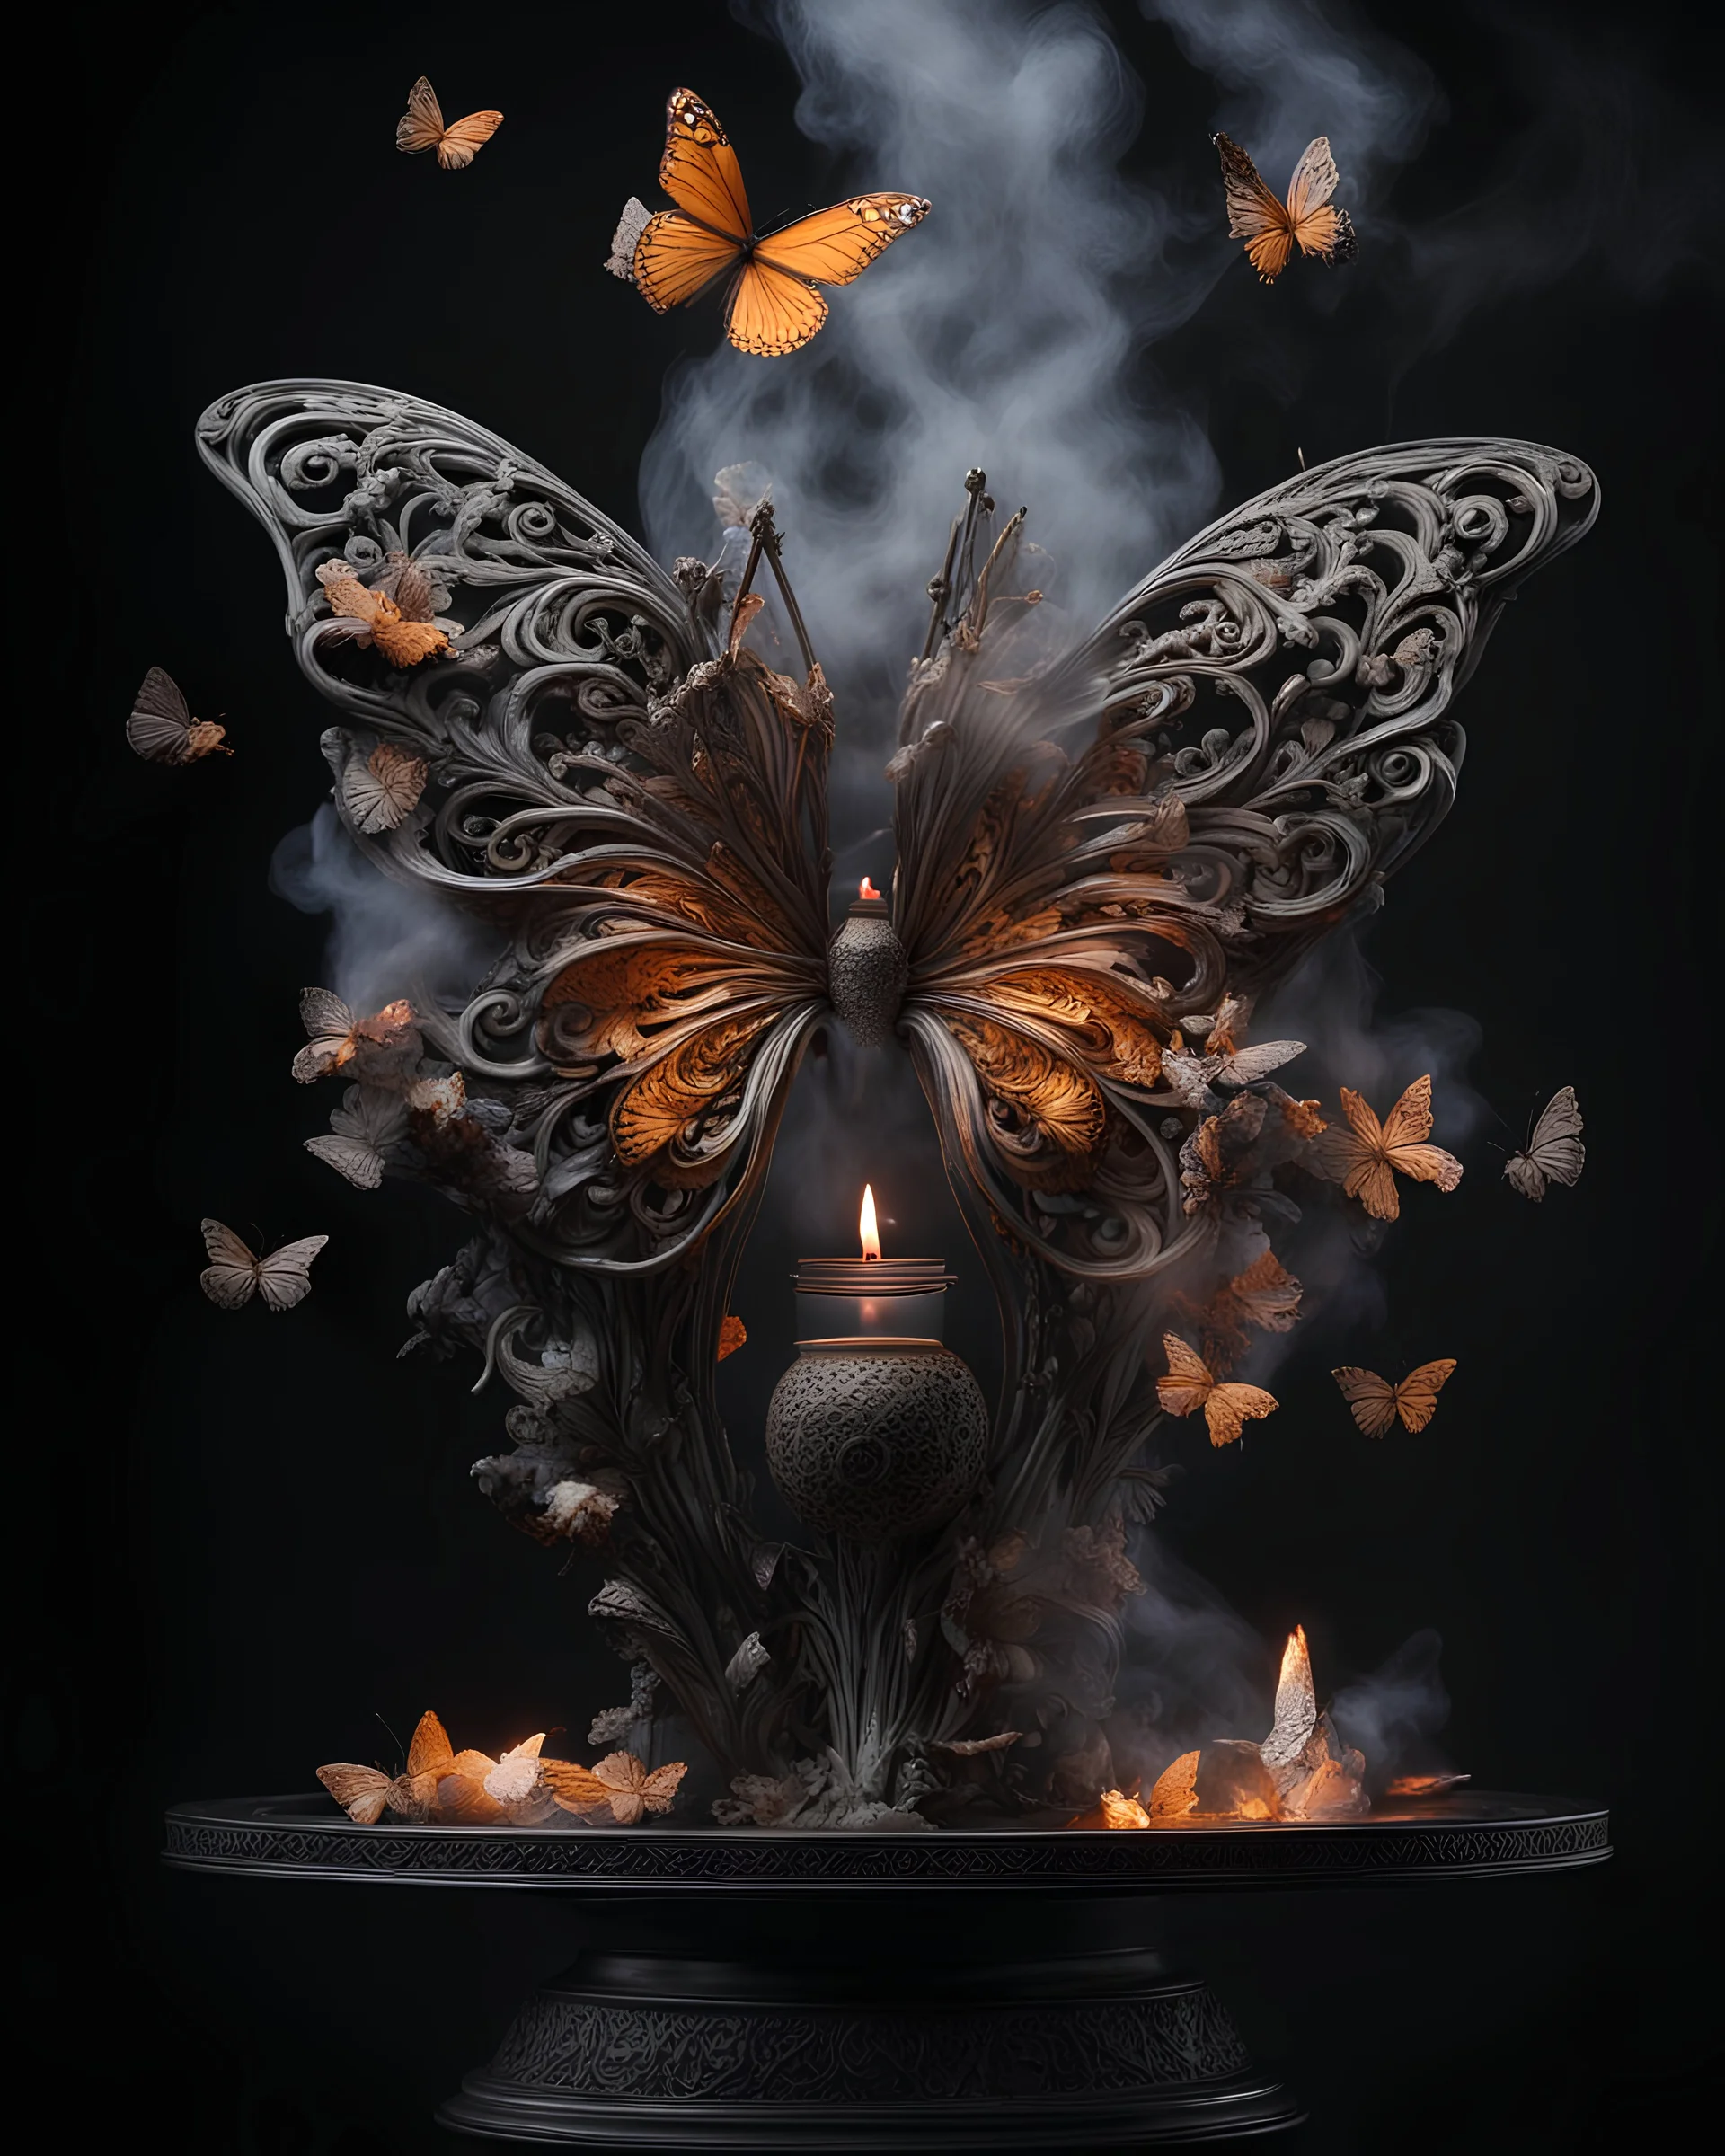 4K-Bildes einer hybriden Skulptur, eine Mischung aus exotischer Blume und Metall, komplizierte Details, eine halb brennende Kerze in der Mitte, die Skulptur schwebt in einem schwarzen Raum mit Schmetterlingen aus Rauch.